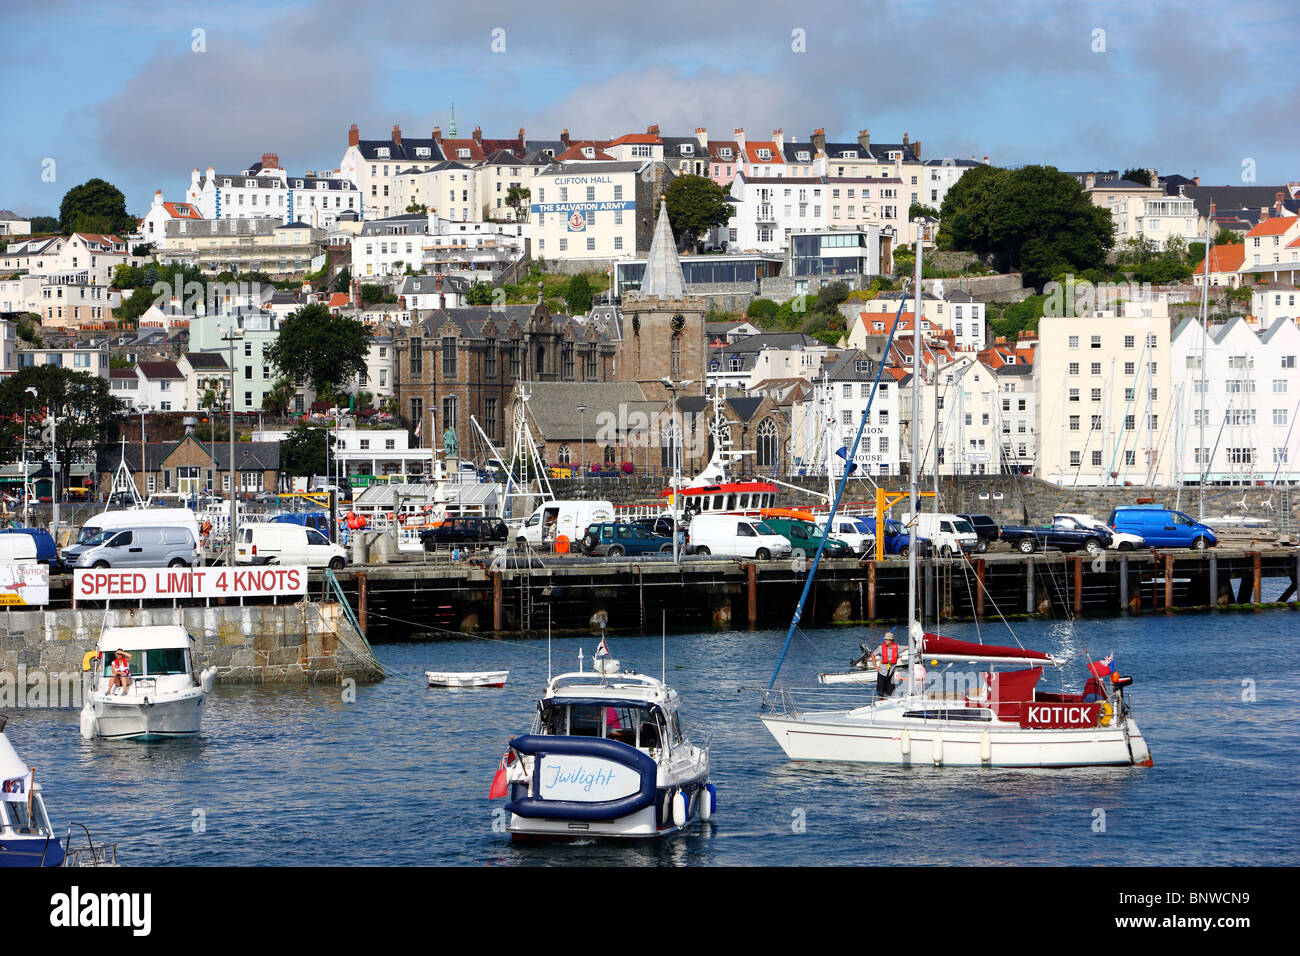 Hafen, Hafen von St. Peter Port, Guernsey, UK, Kanalinseln. Segelboote und Yachten in das Hafenbecken, Skyline der Stadt Stockfoto